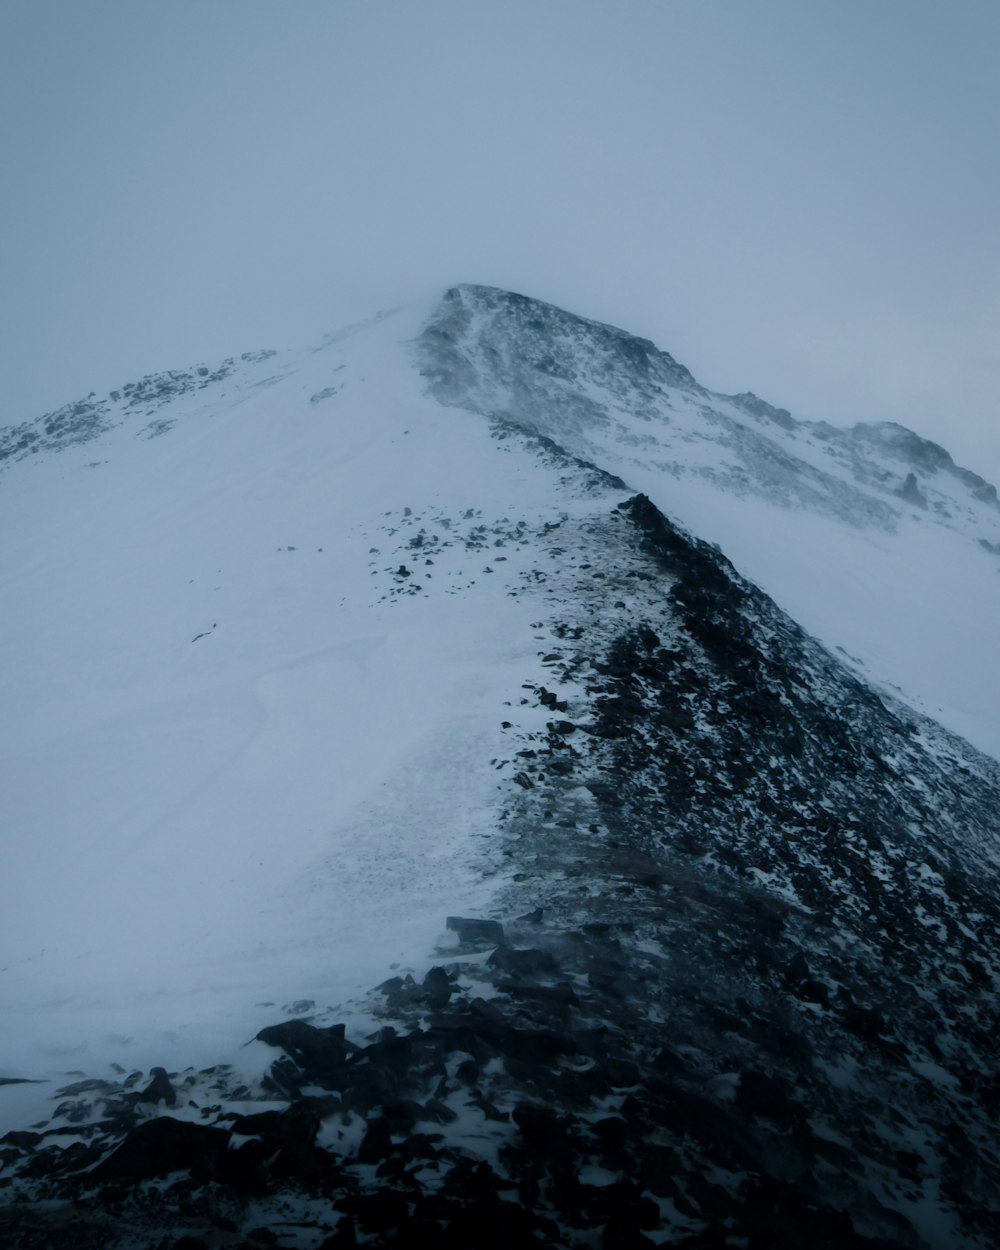 Ein sehr hoher Berg, der an einem bewölkten Tag mit Schnee bedeckt ist